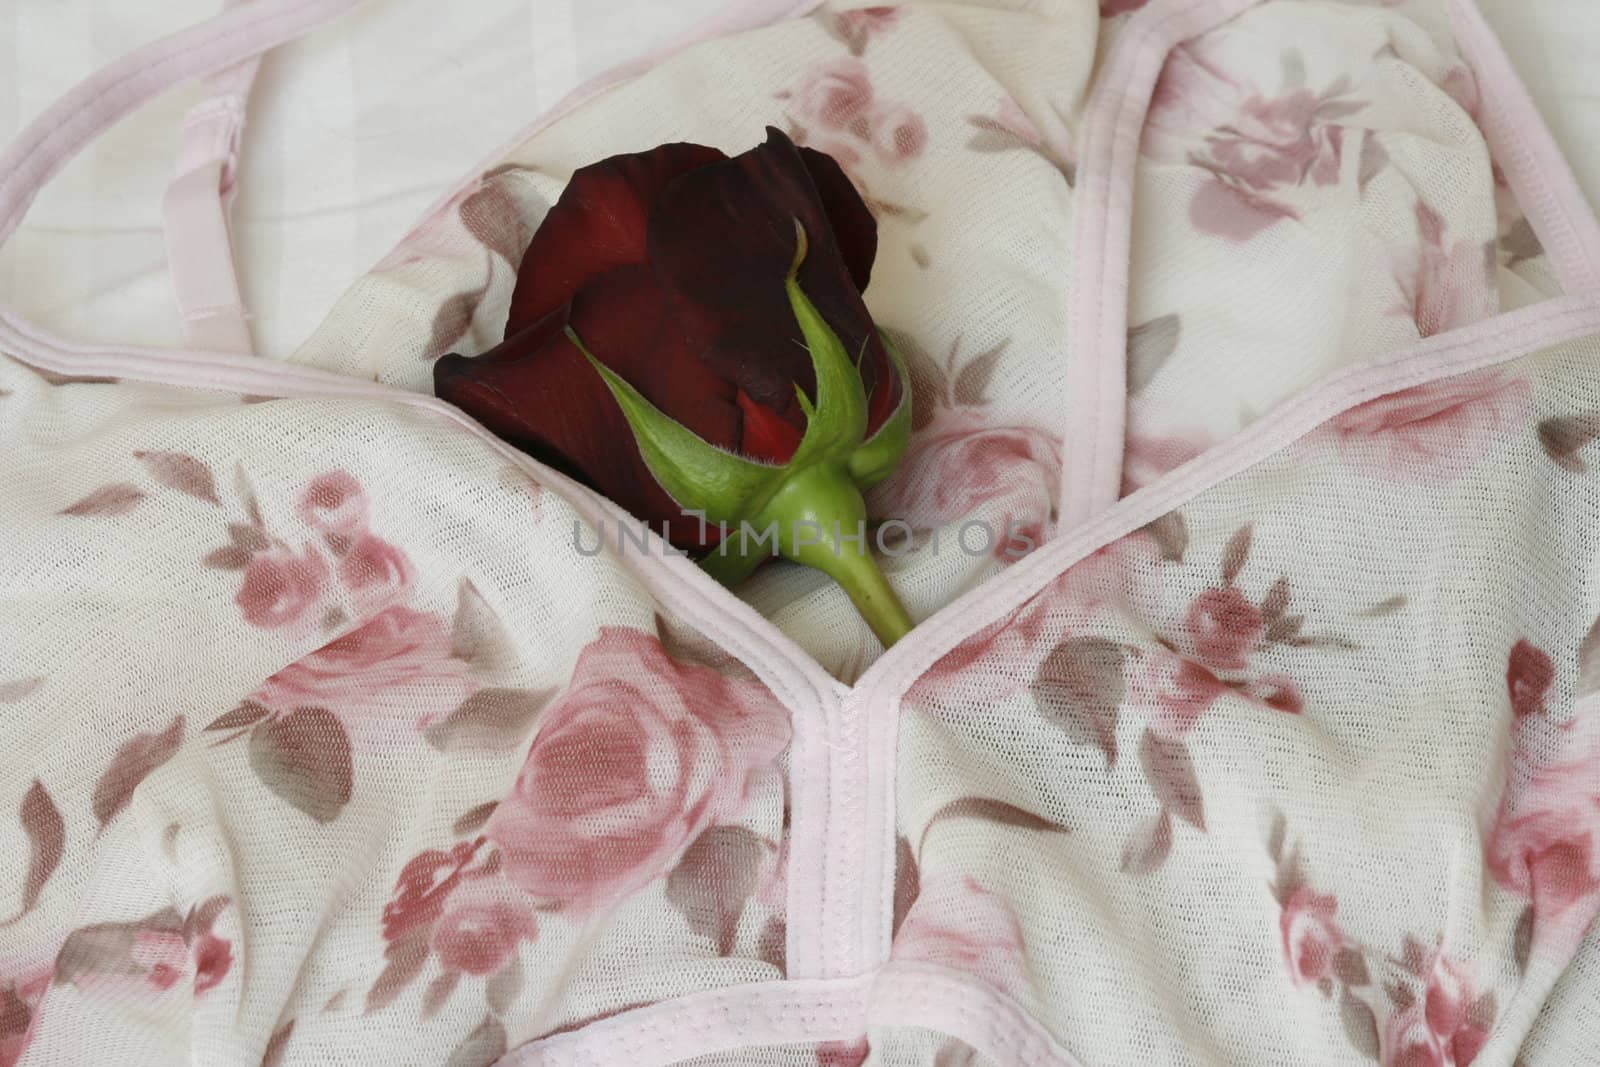 printet underwear with rose